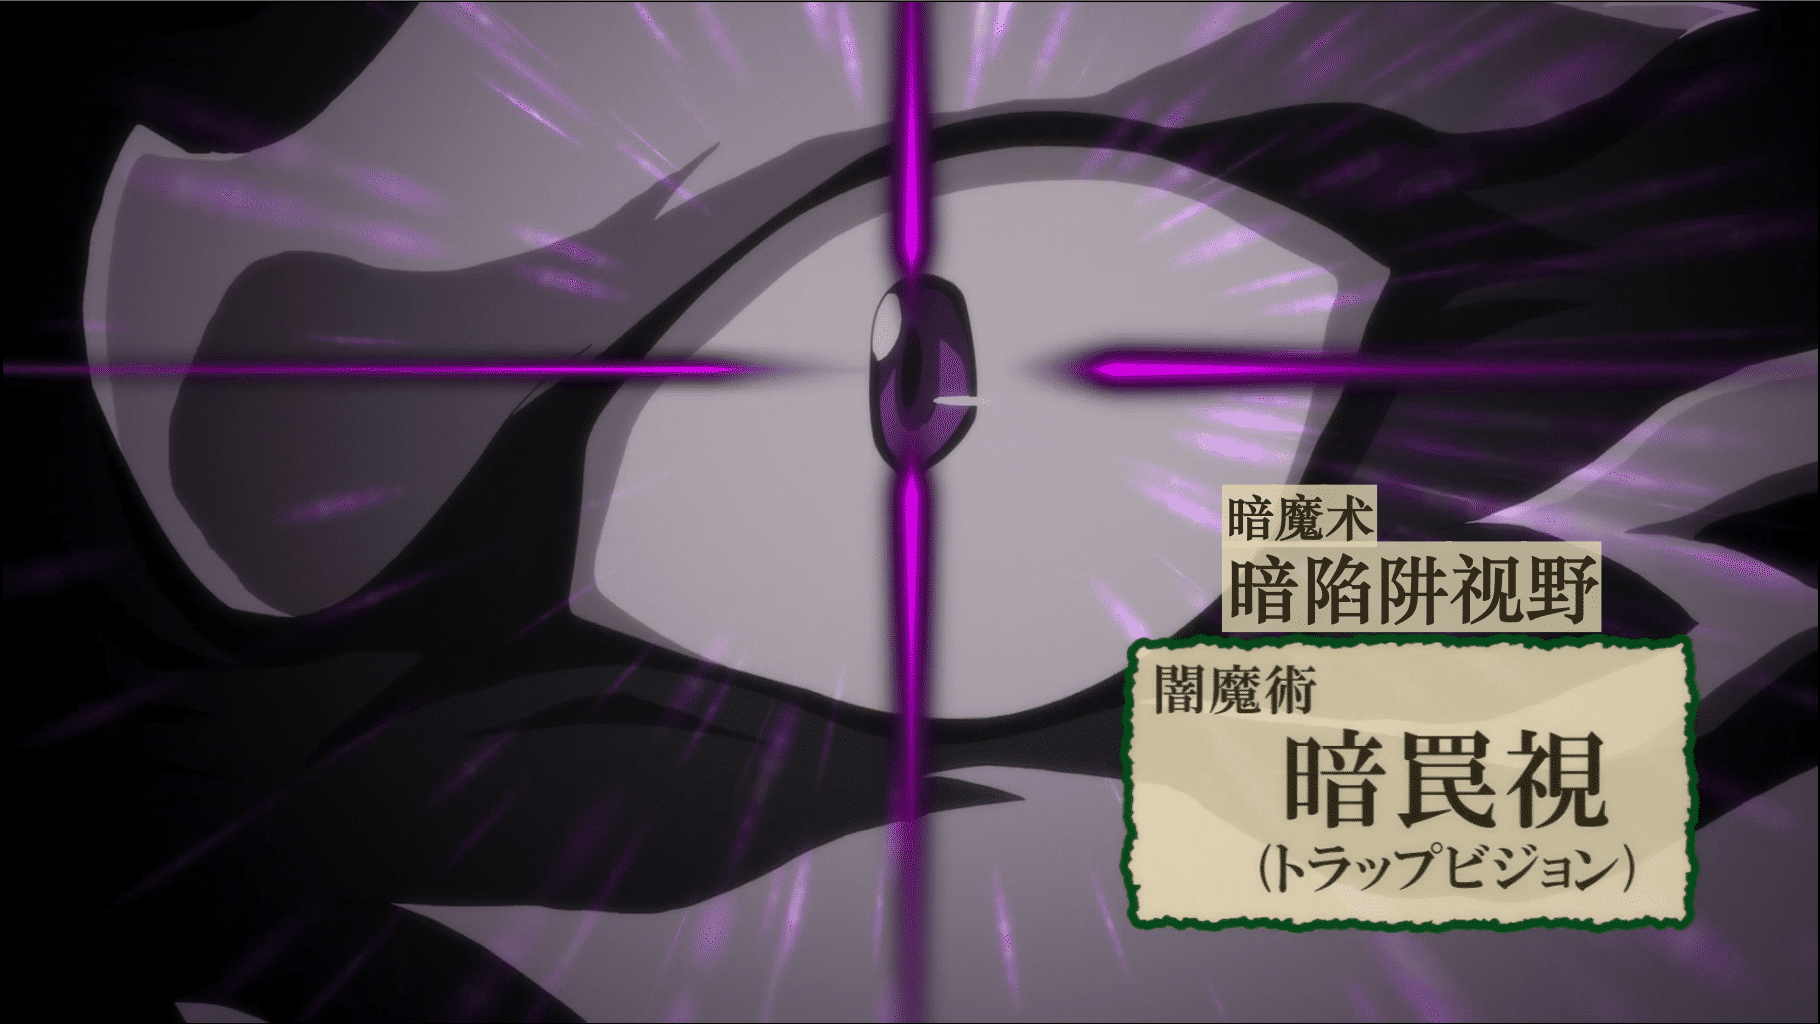 [猎户随缘压制] 转生成为魔剑 / 转生就是剑 Tensei shitara Ken deshita [11] [1080p] [简中内嵌] [2022年10月番]插图icecomic动漫-云之彼端,约定的地方(´･ᴗ･`)1